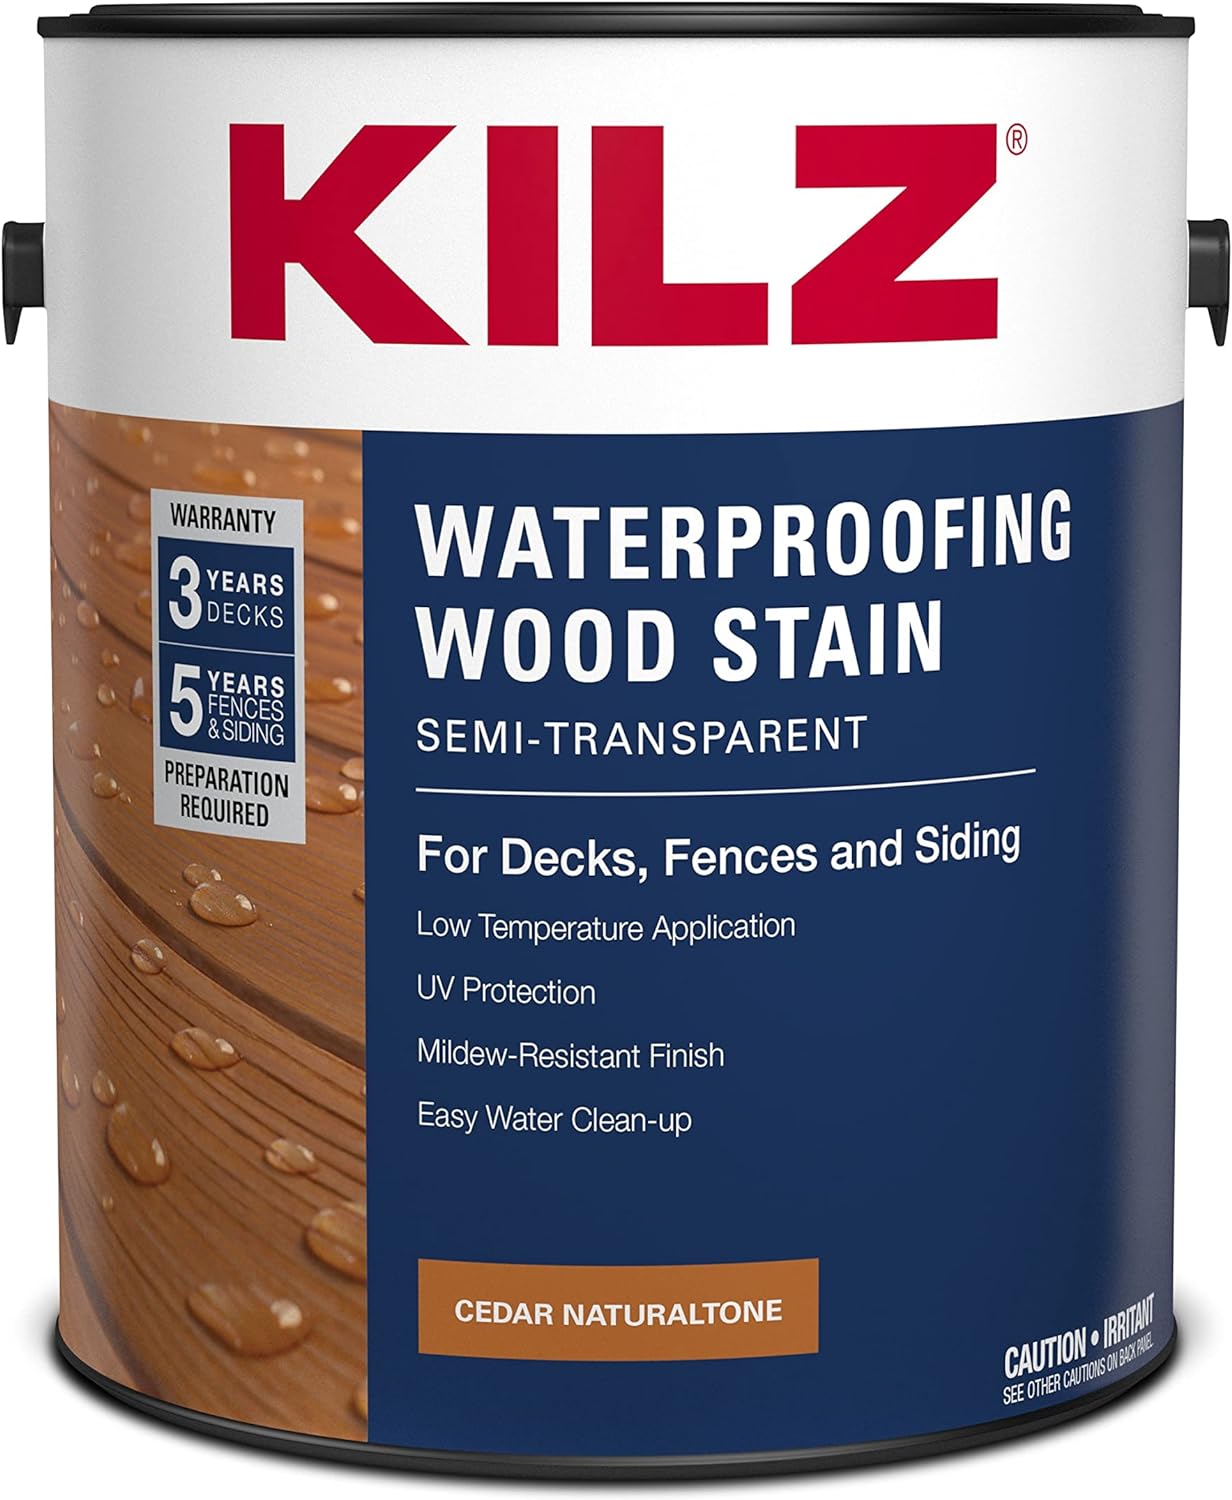 KILZ Waterproofing Wood Stain